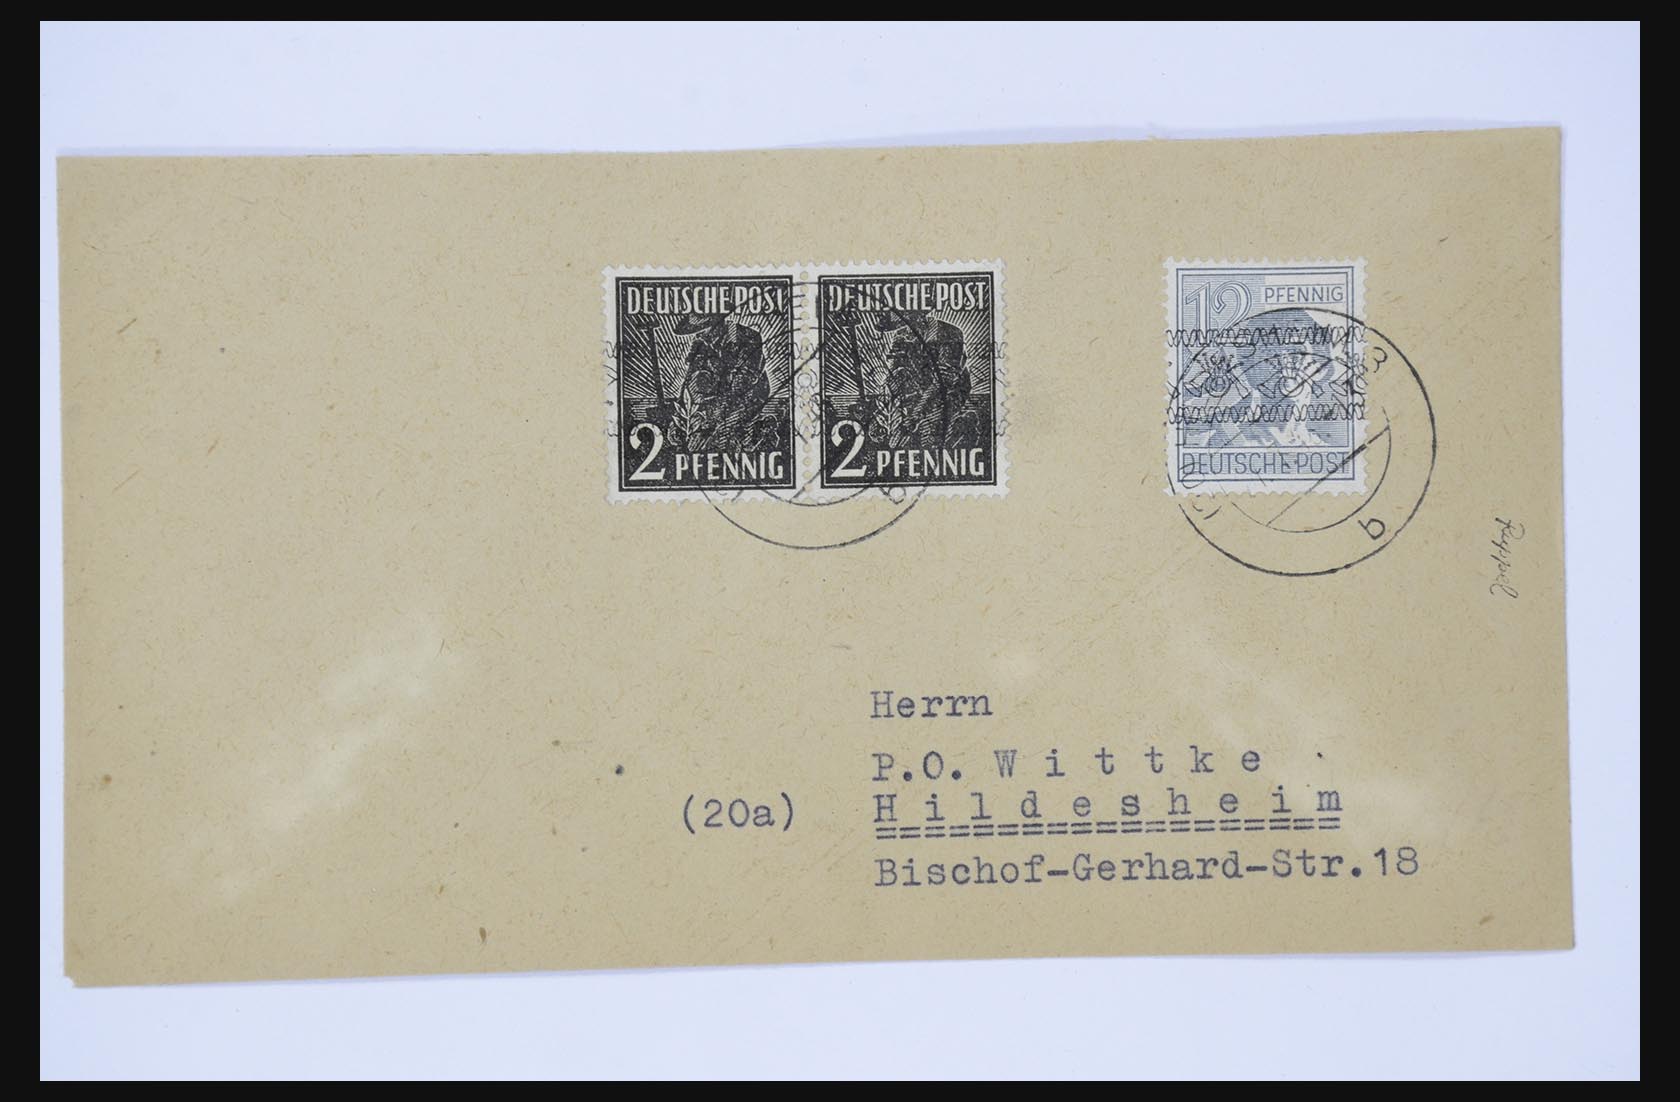 31581 049 - 31581 Duitsland brieven en FDC's 1945-1981.